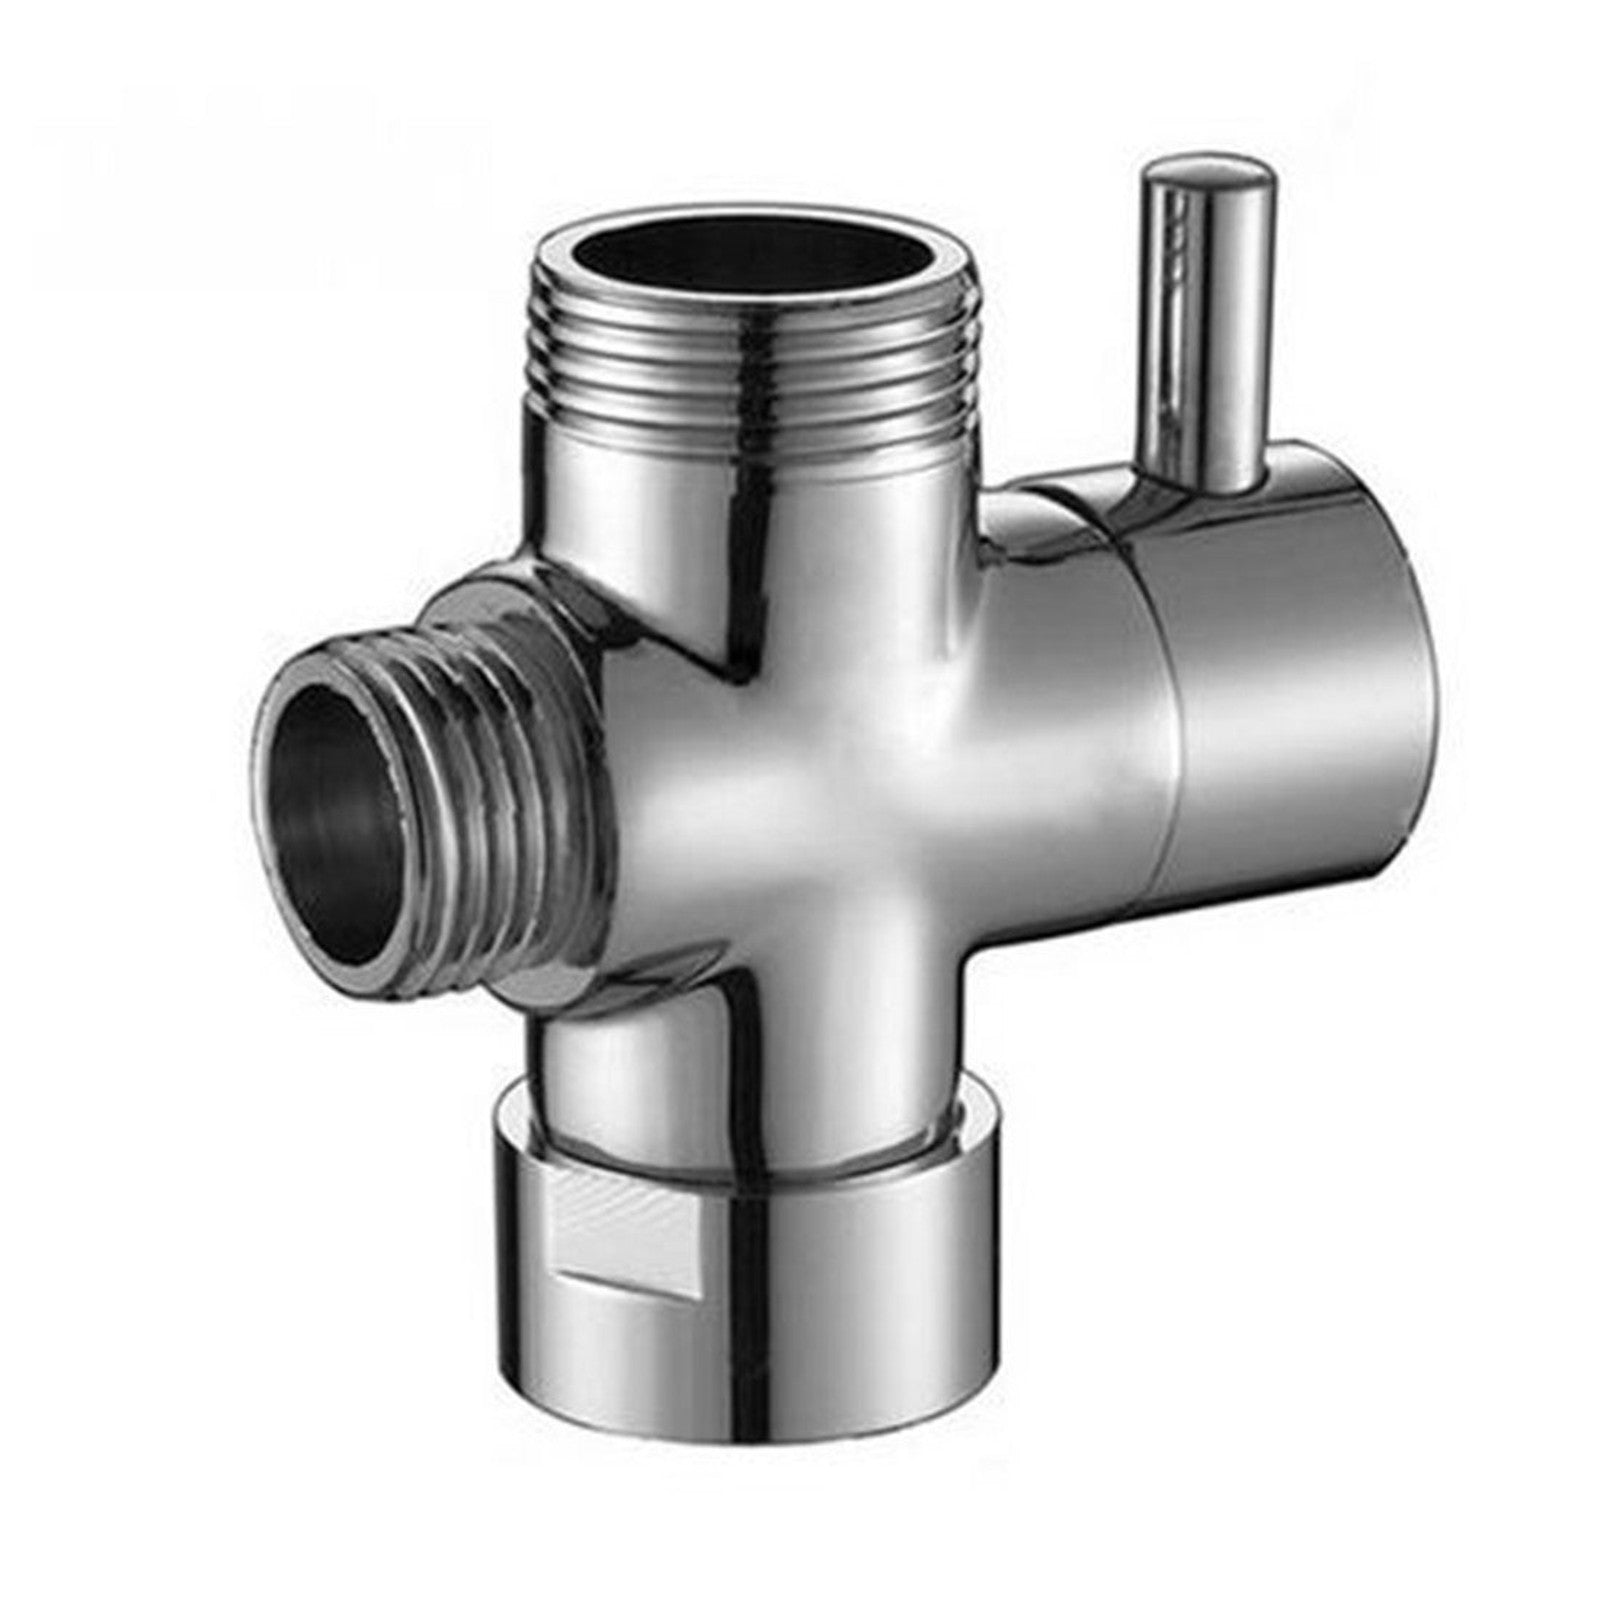 D01-01-round-shower-diverter-valve-3-4-to-column-chrome